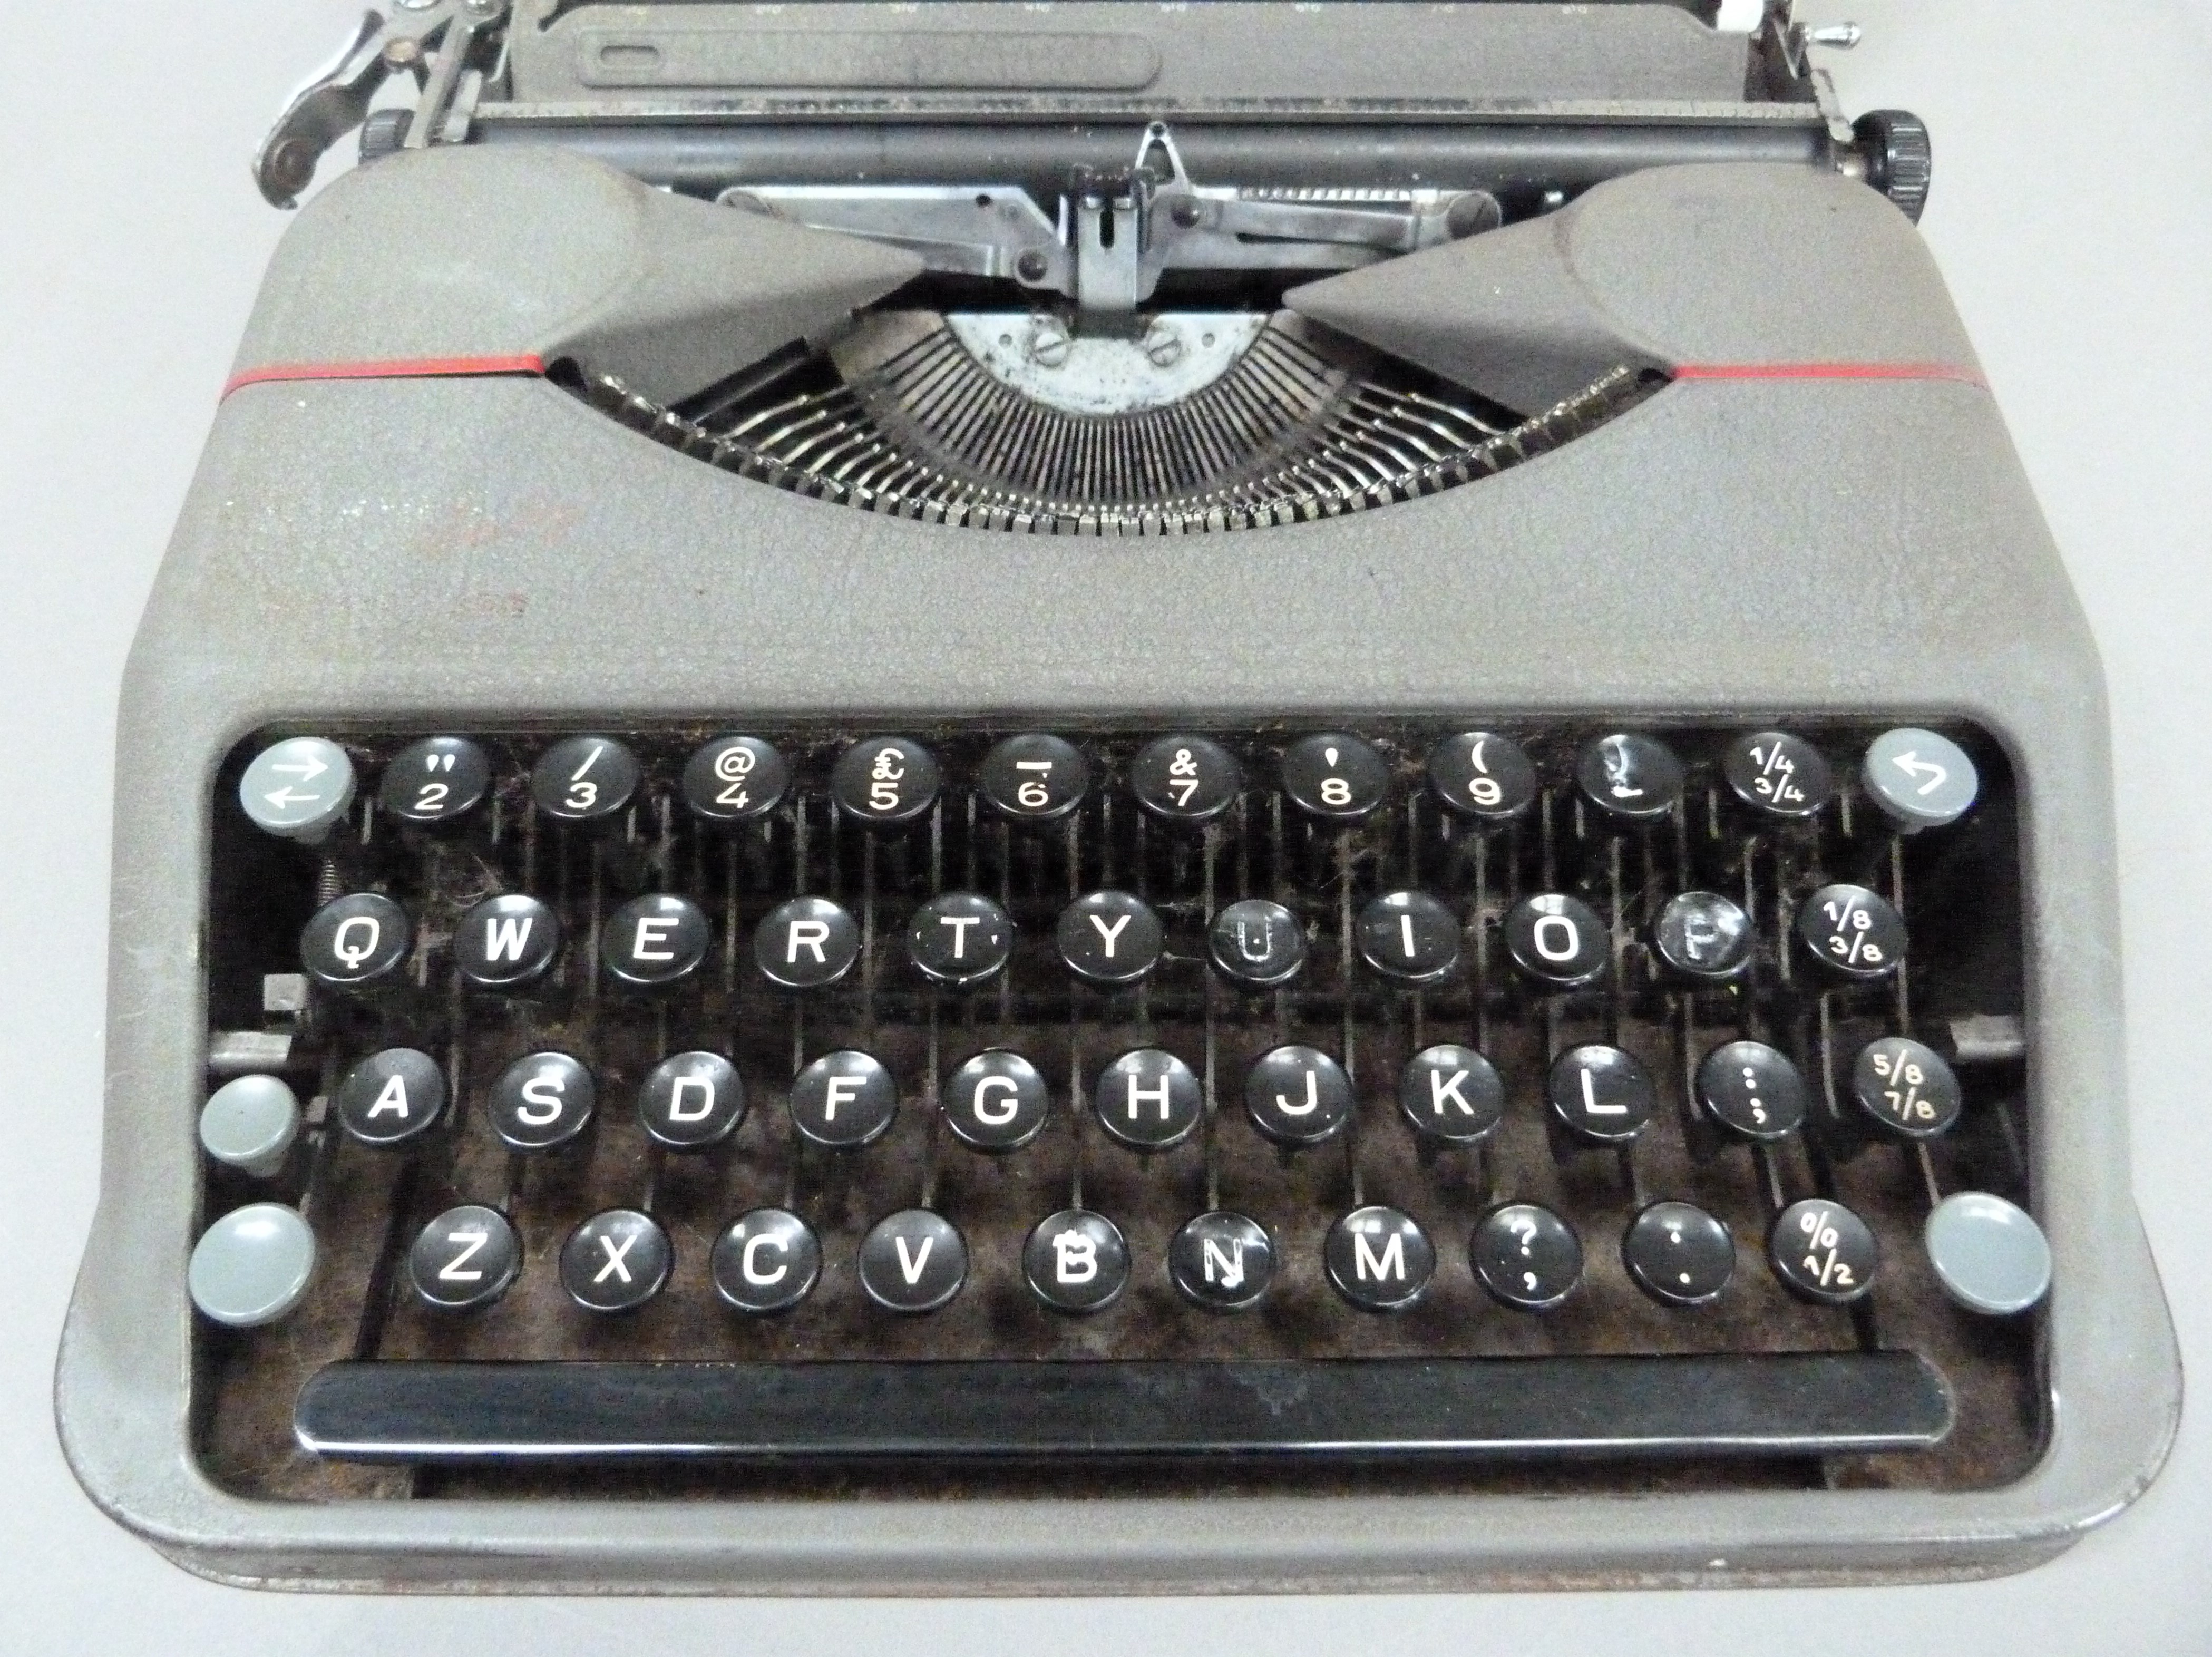 A Hermes portable typewriter by Paillard in grey metal case